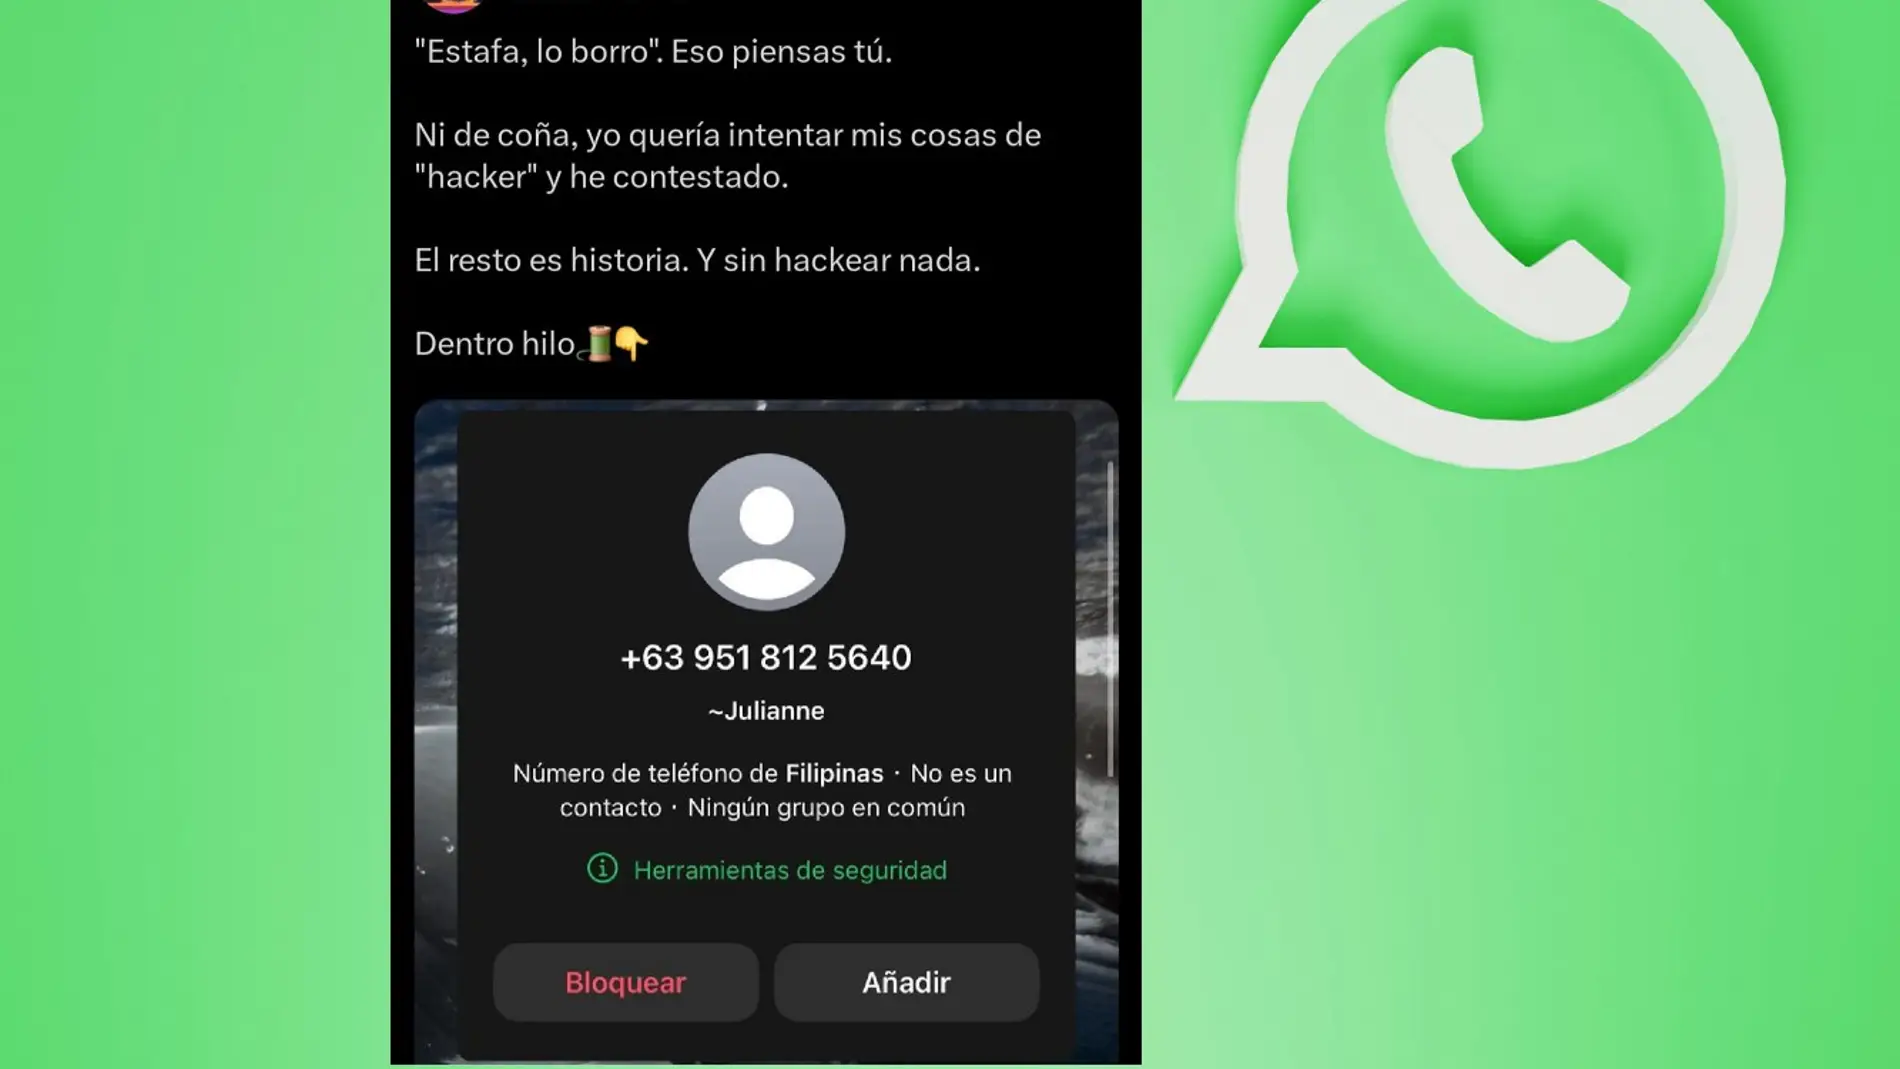 Intentaron estafarle a través de WhatsApp pero este hacker acabó quitándoles dinero